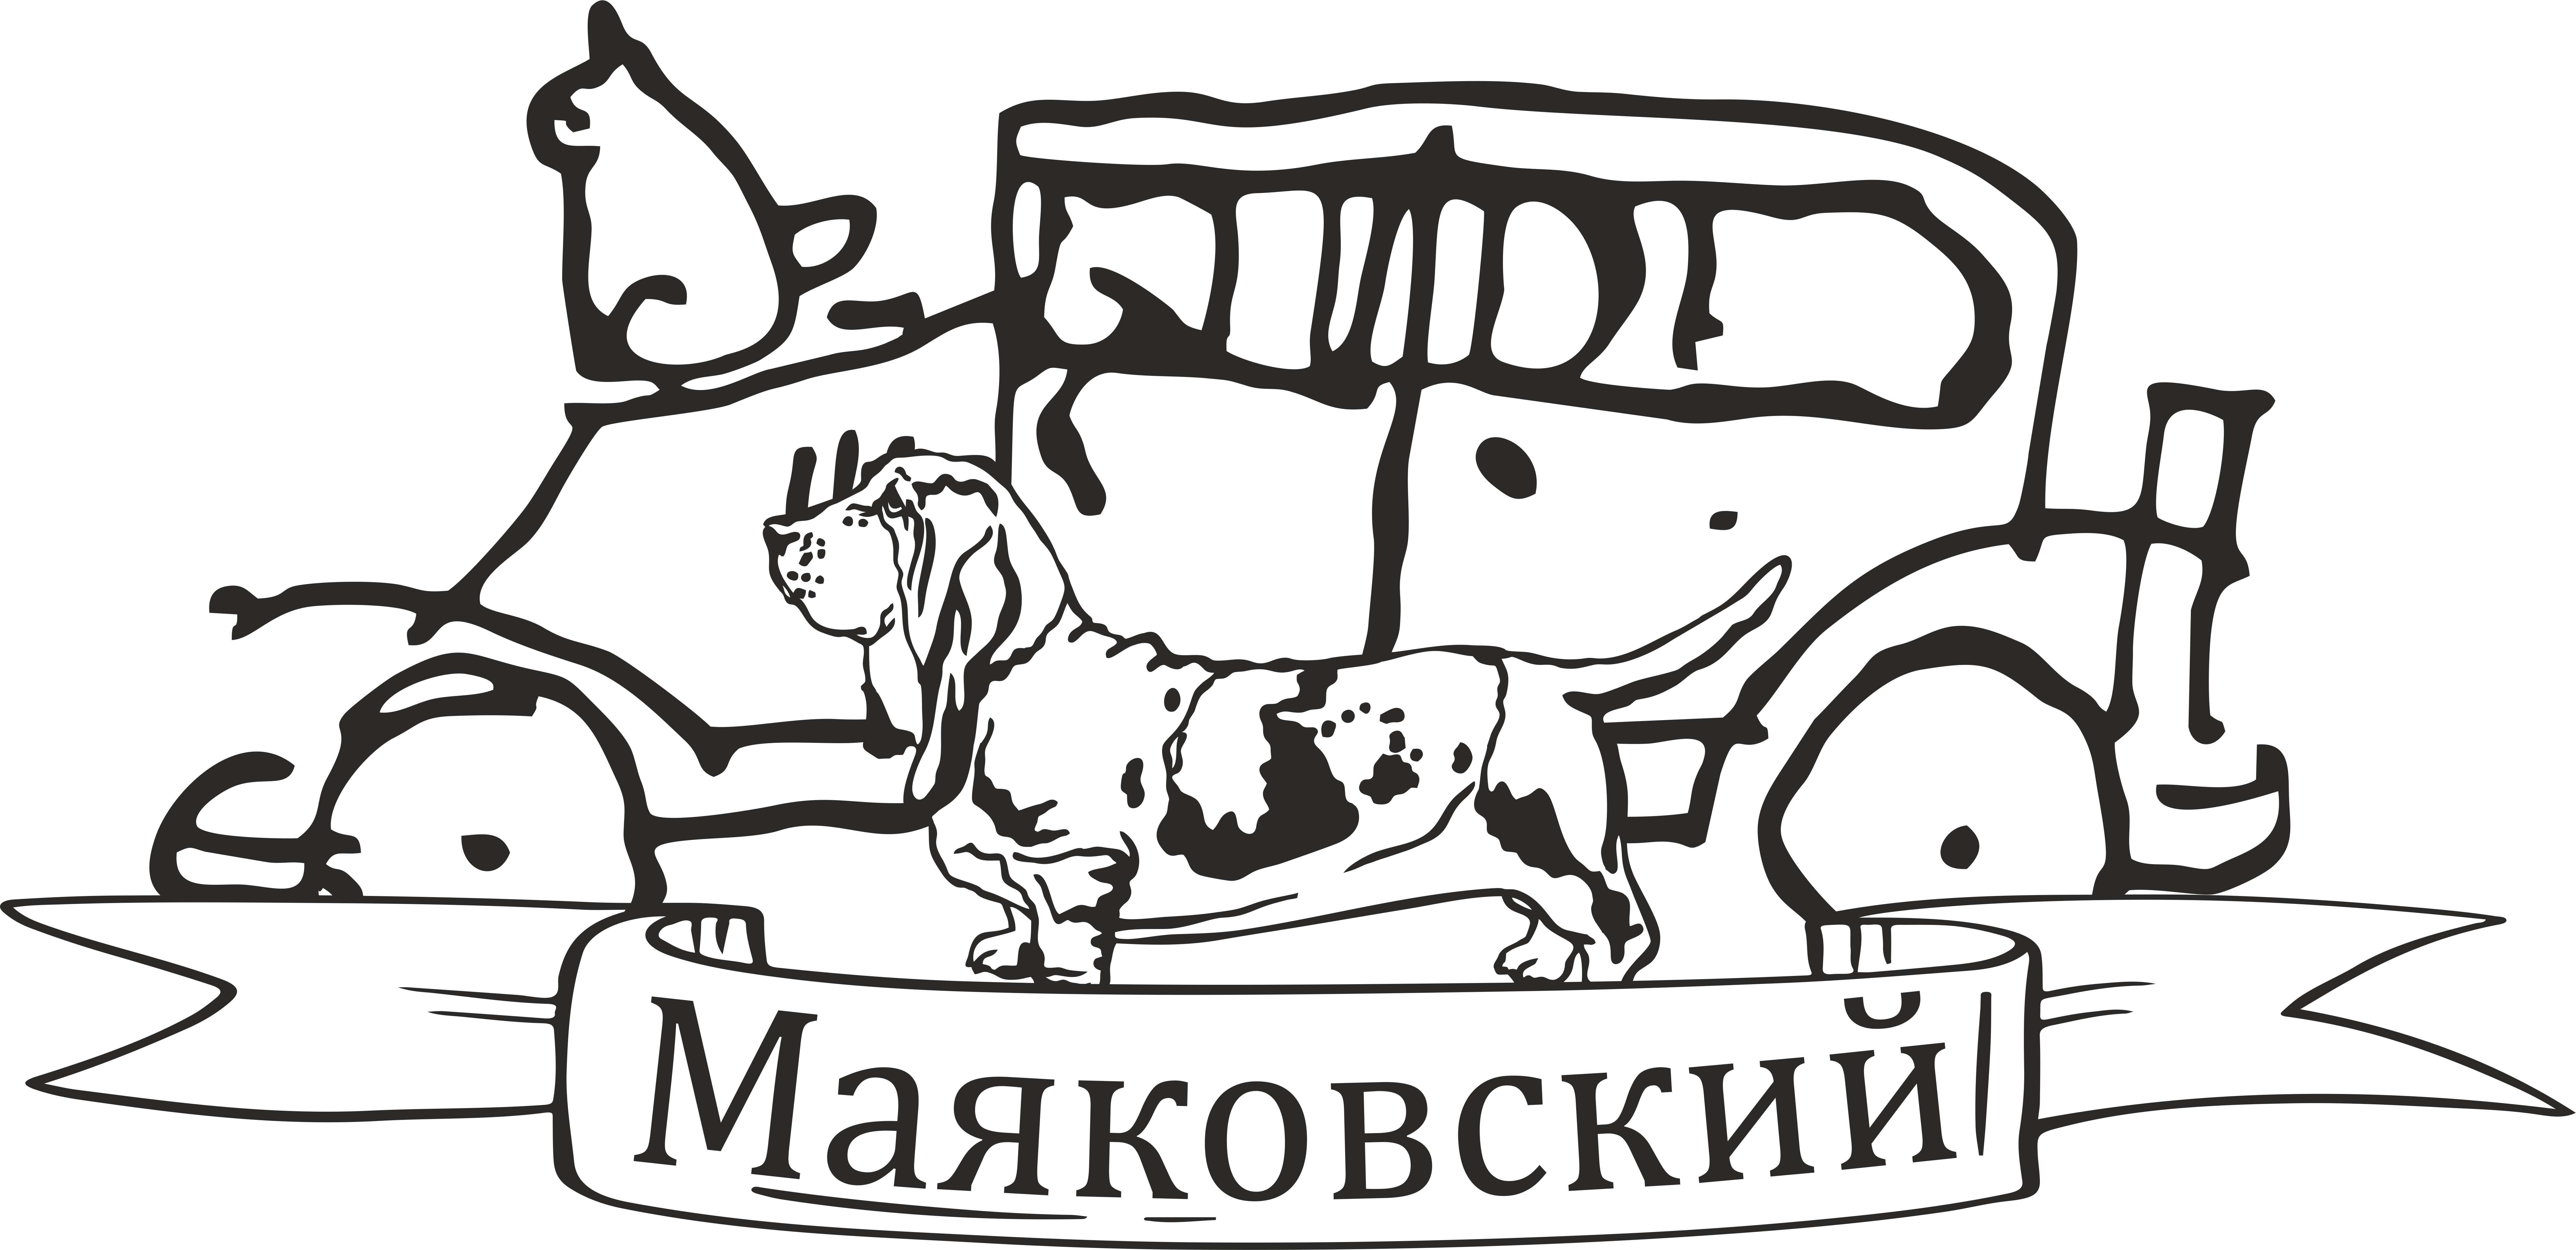 Маяковский - Продажа, прокат автомобилей, индивидуальные экскурсии на эксклюзивных автомобилях в Краснодаре